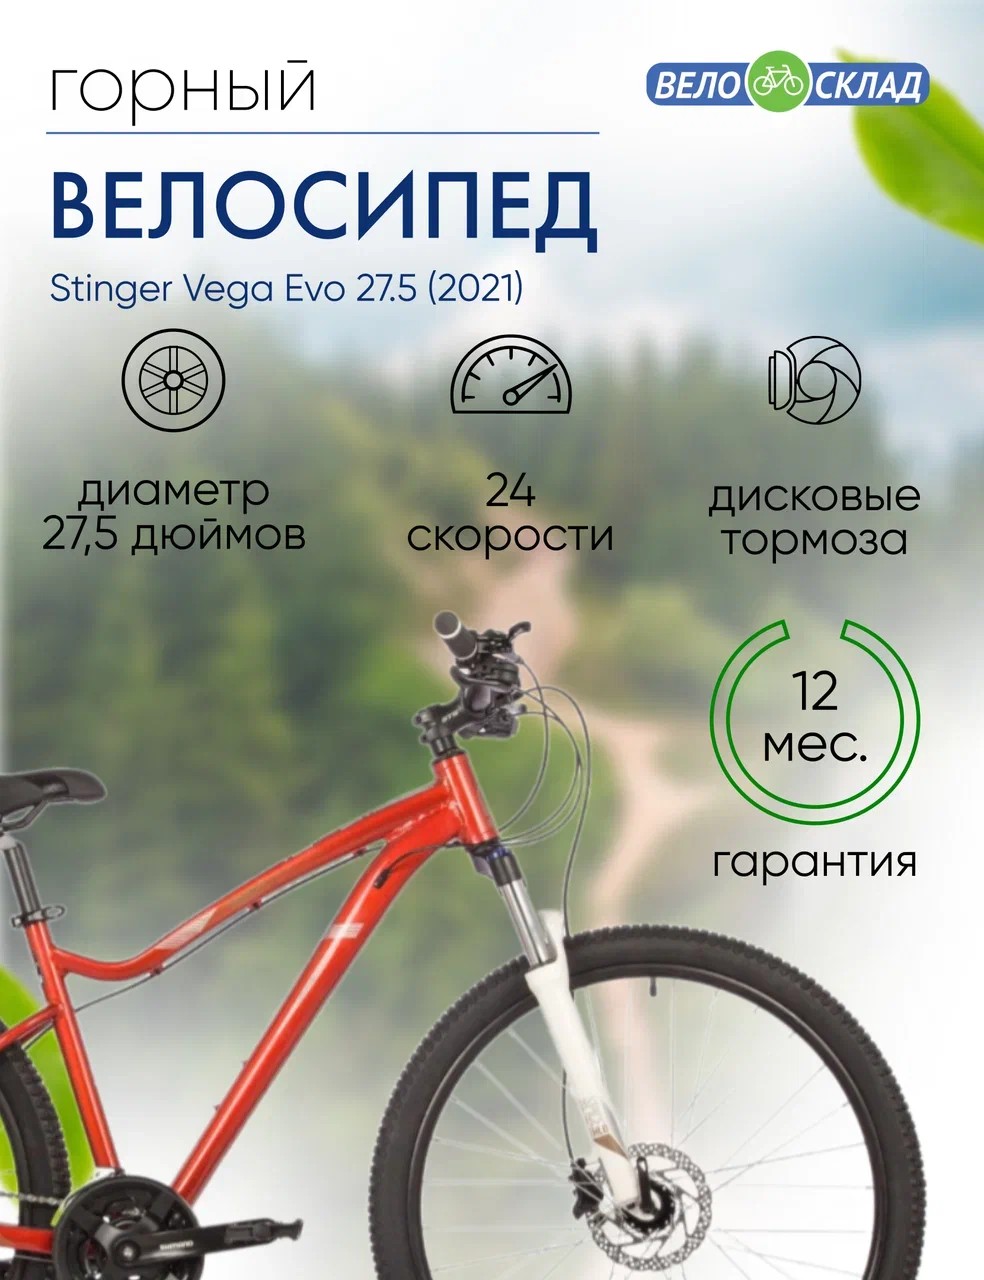 Женский велосипед Stinger Vega Evo 27.5, год 2021, цвет Оранжевый, ростовка 15